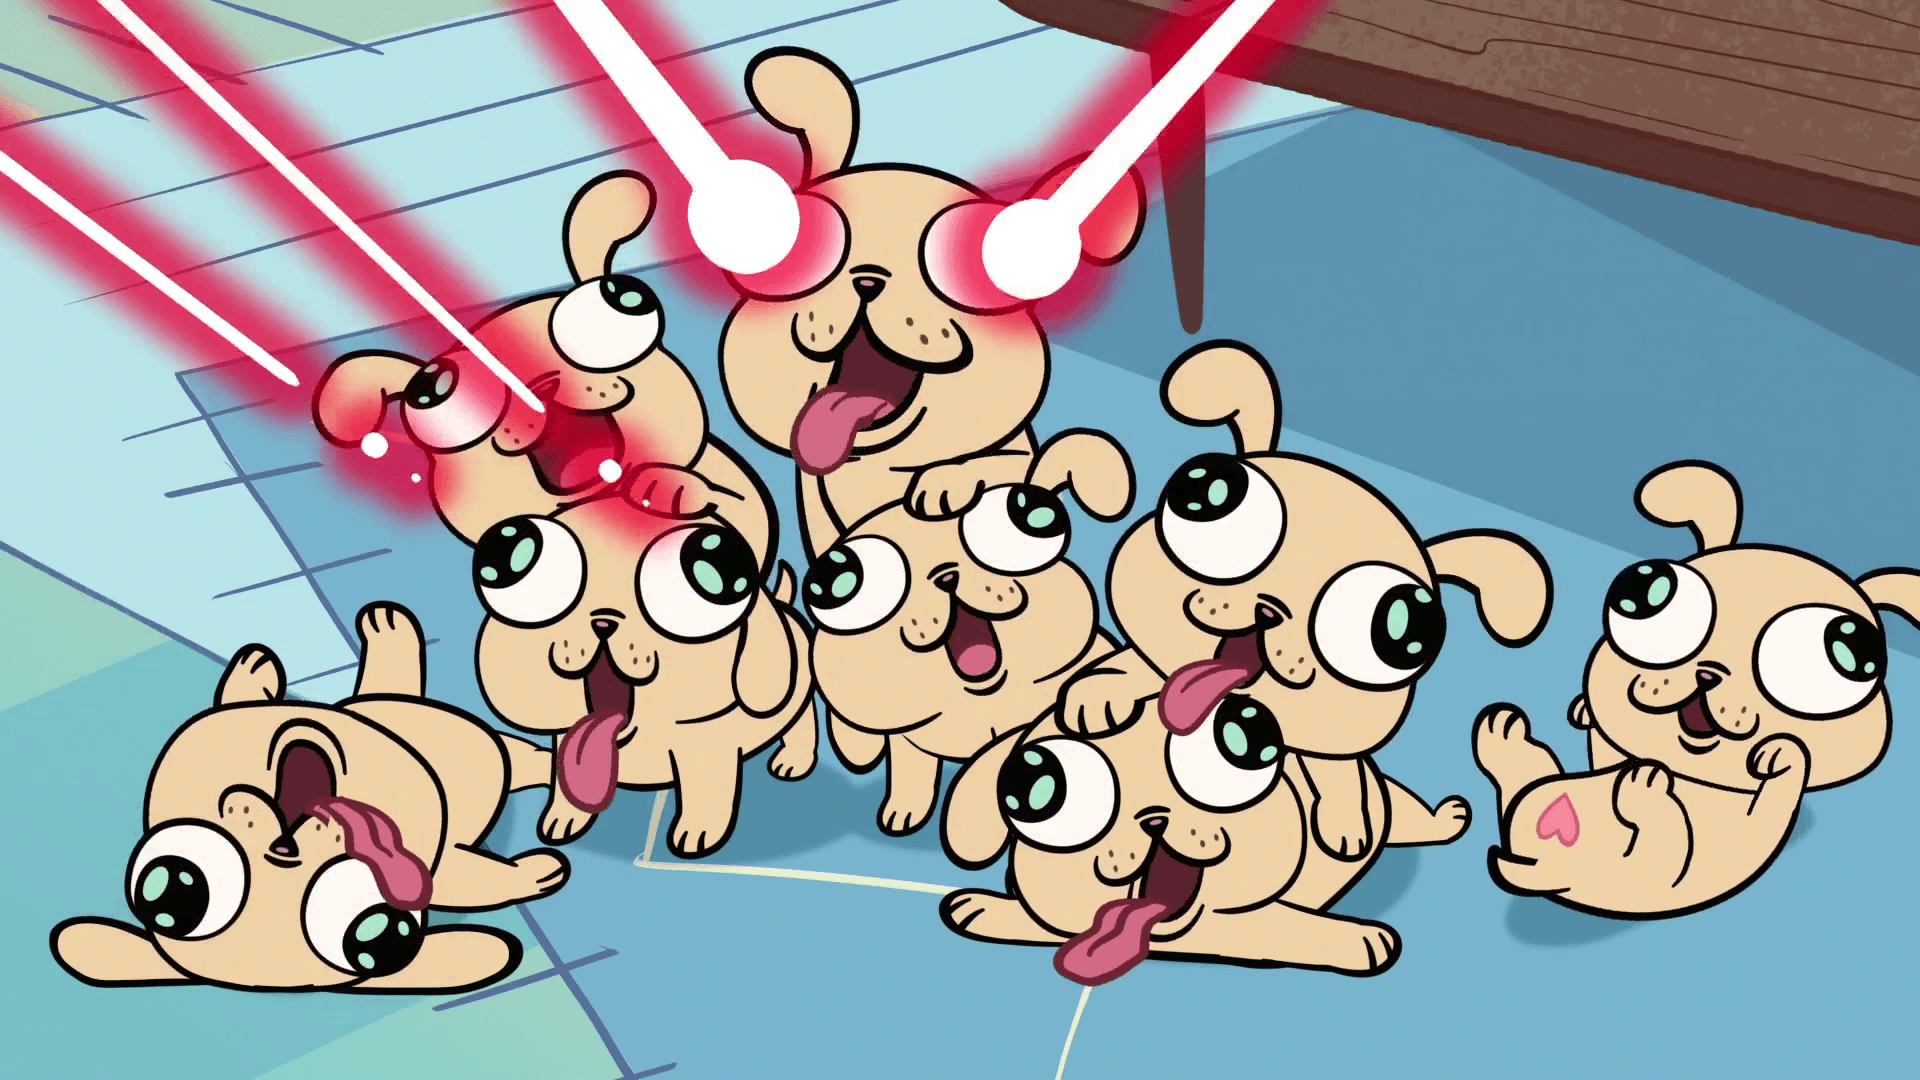 Laser puppies